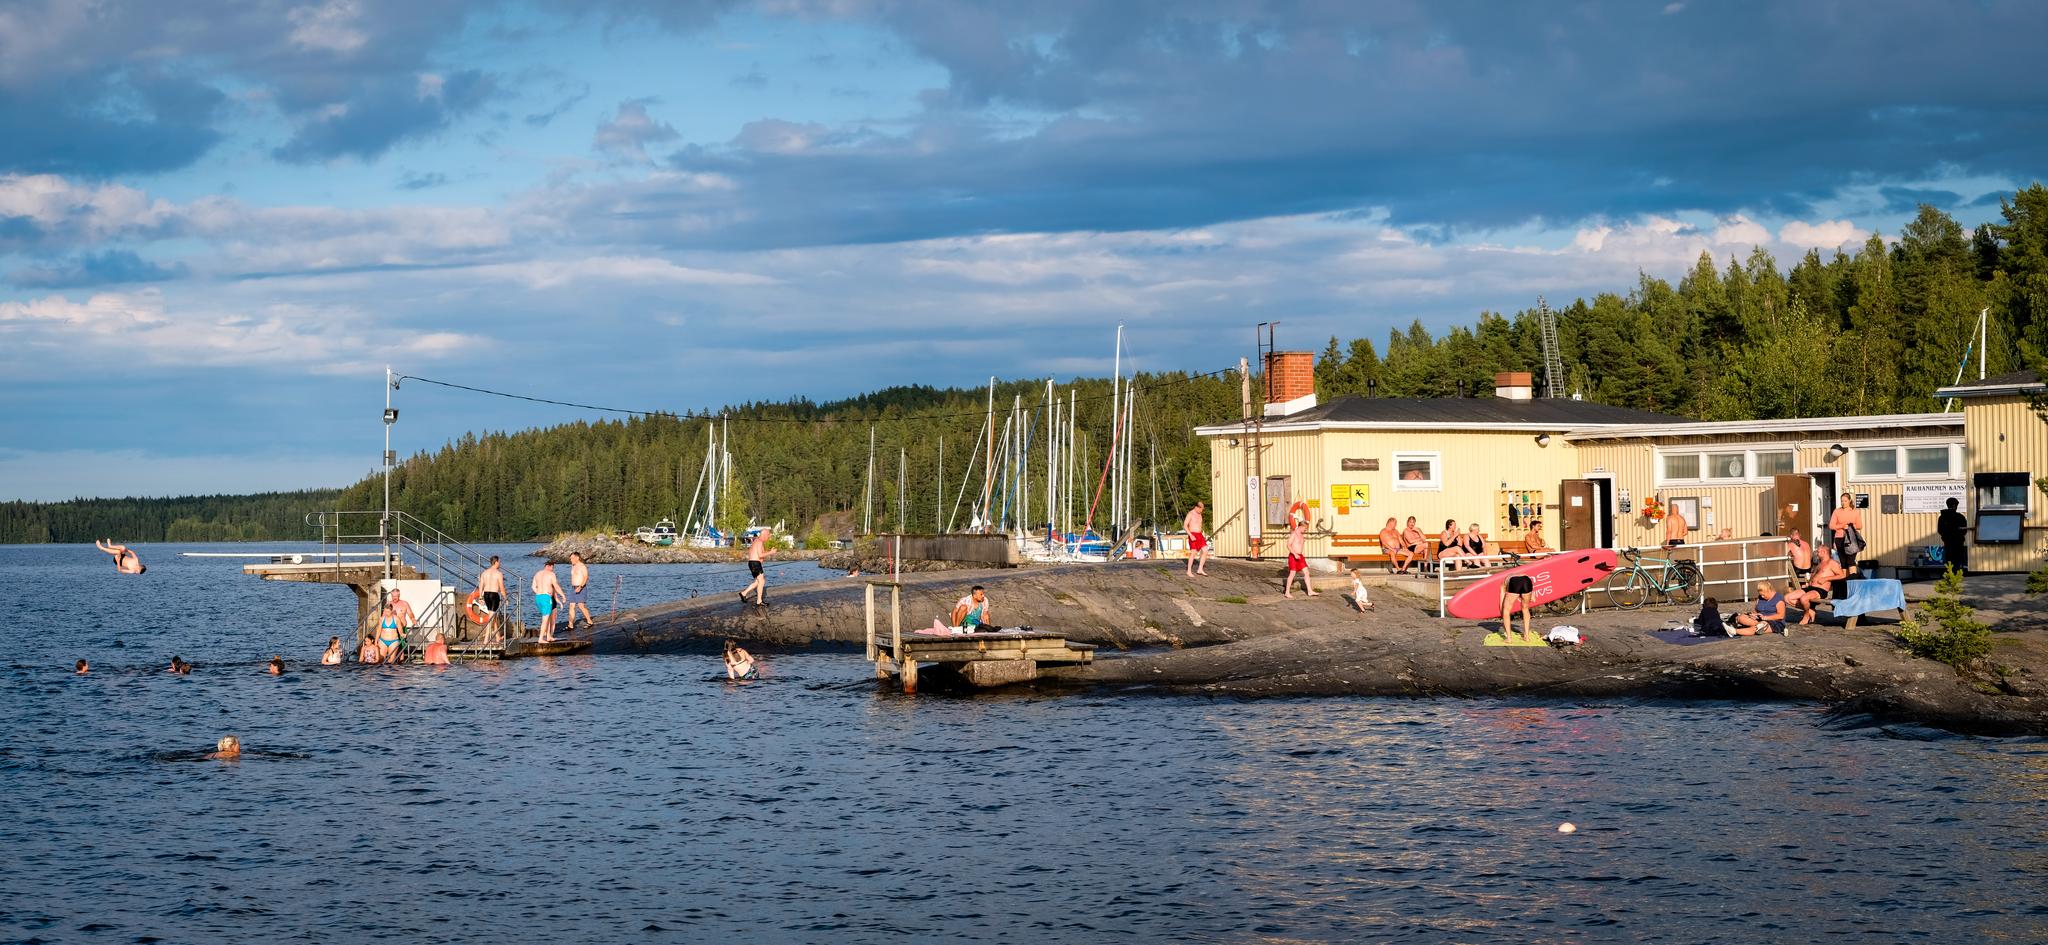 Vakker beliggenhet og gode bademuligheter ved Näsijärvi-sjøen gjør Rauhaniemi til en av Tamperes mest populære offentlige saunaer.